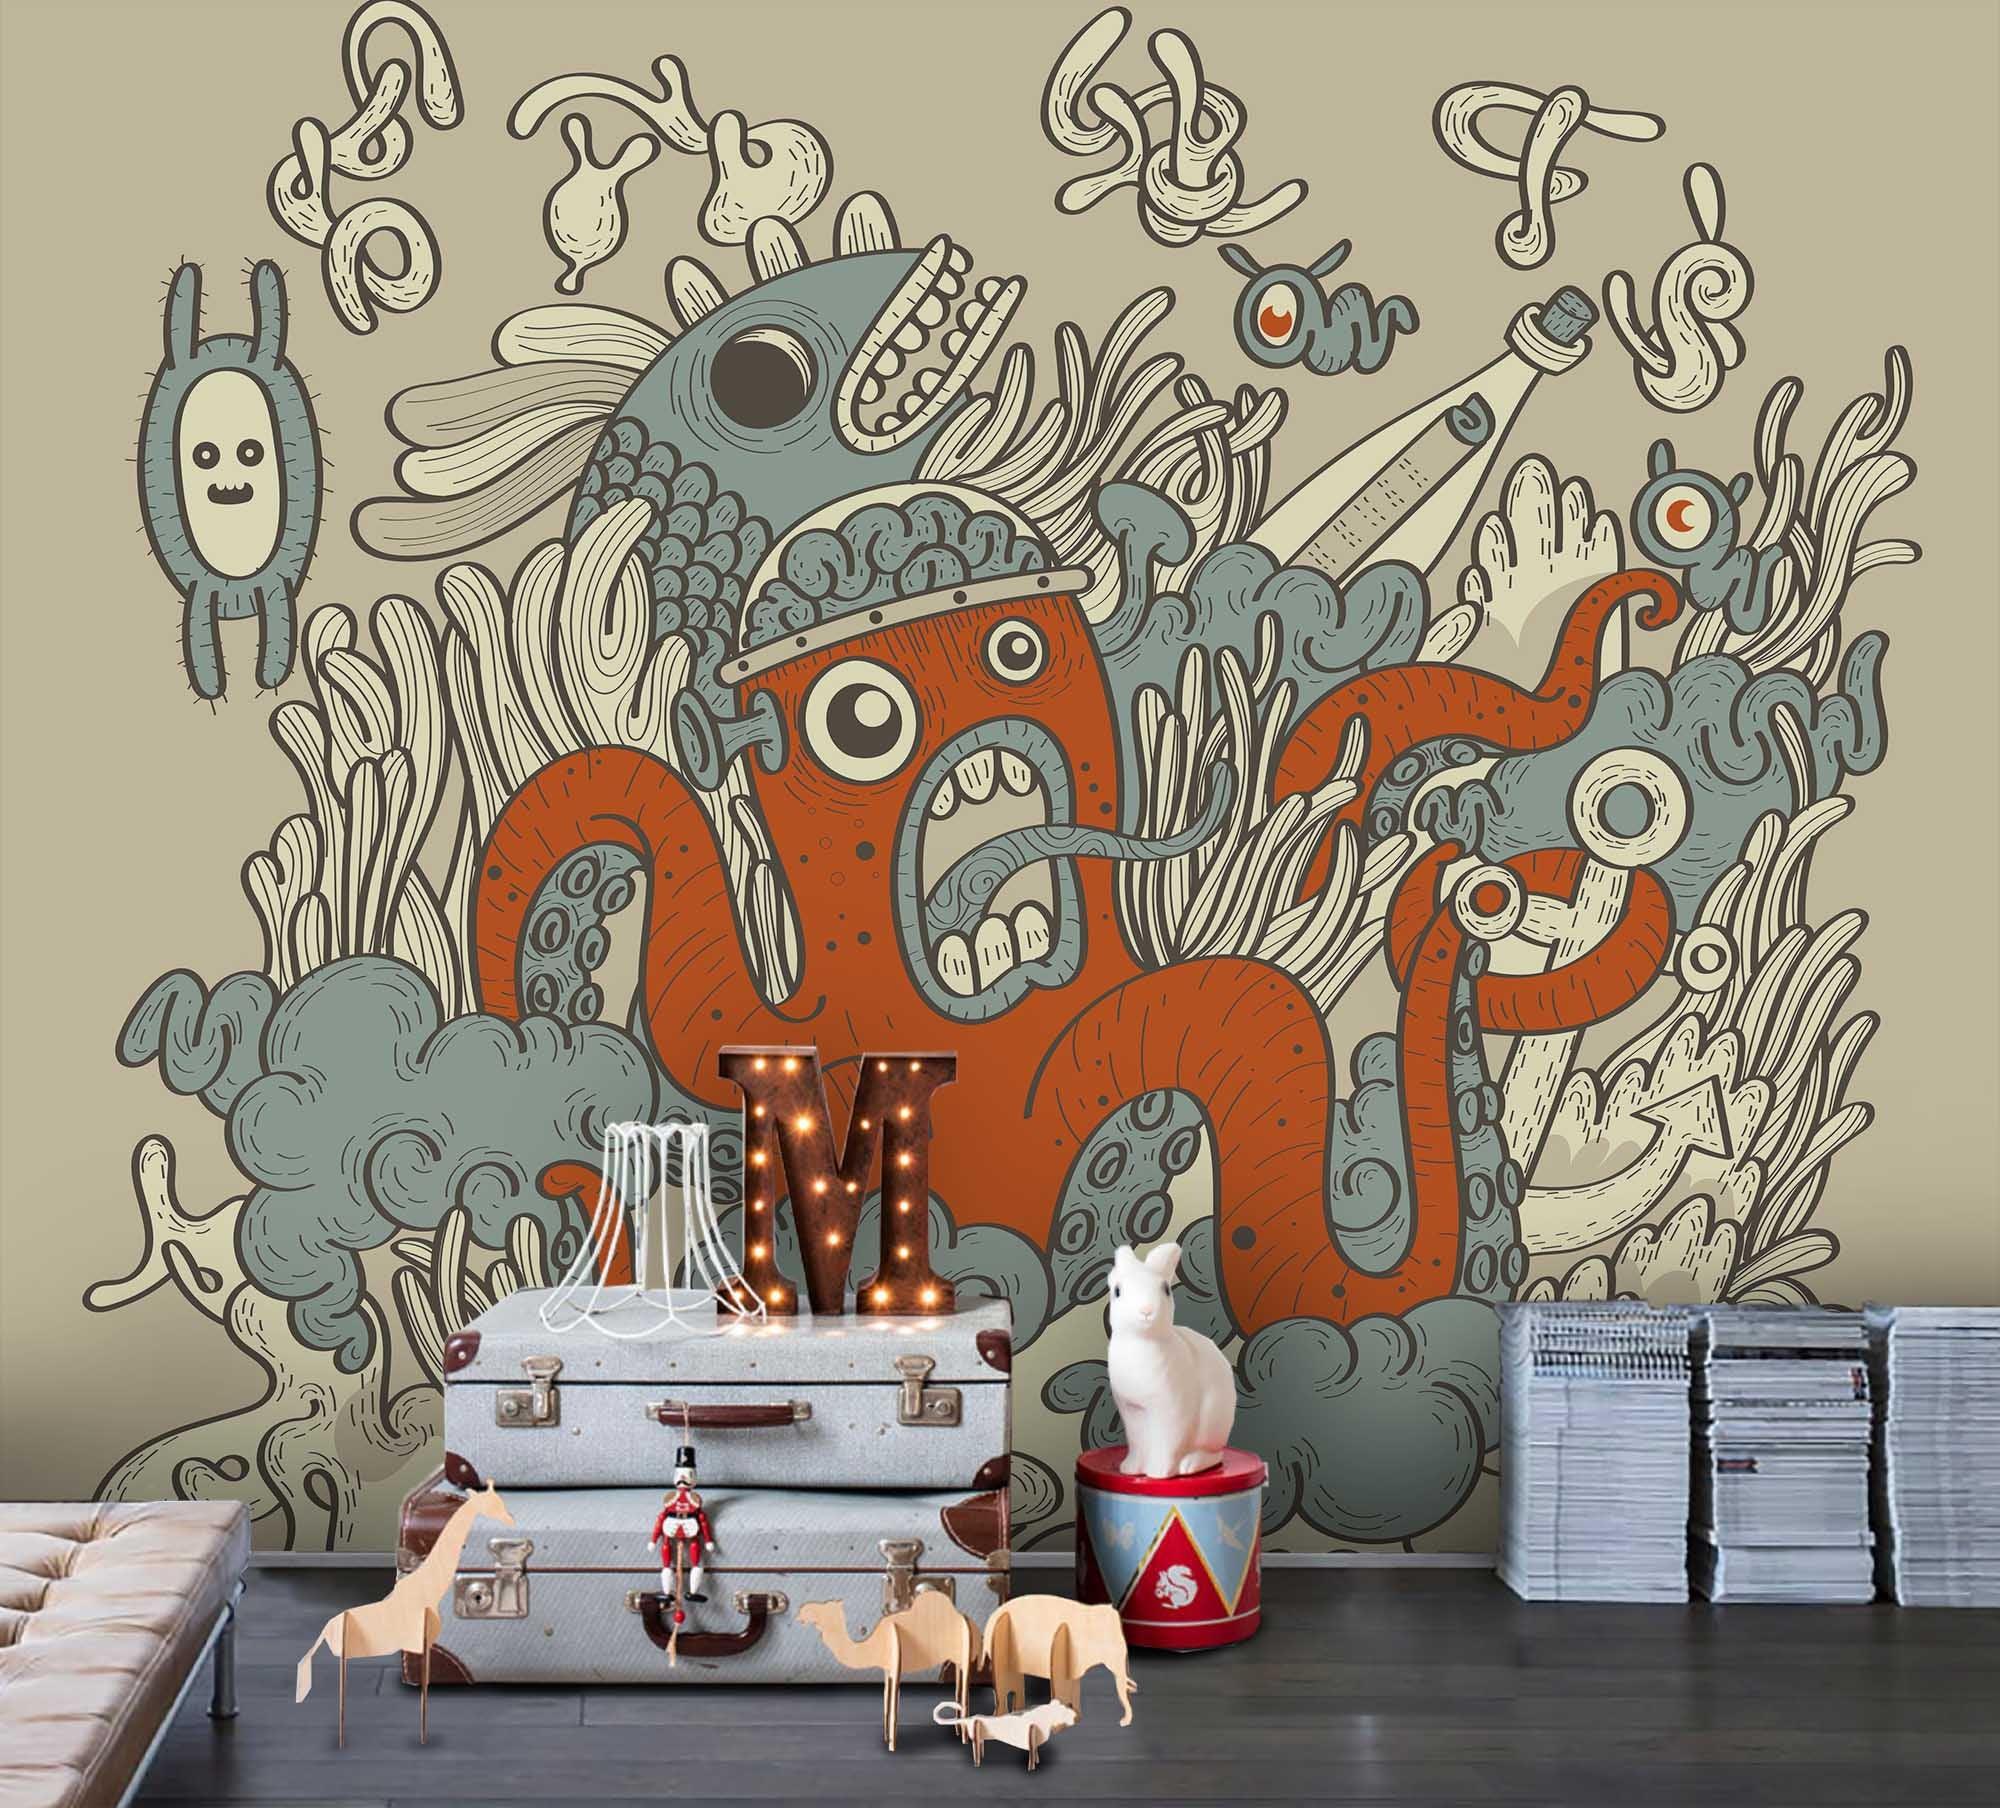 3D Cartoon Octopus Wall Mural Wallpaper SF20- Jess Art Decoration